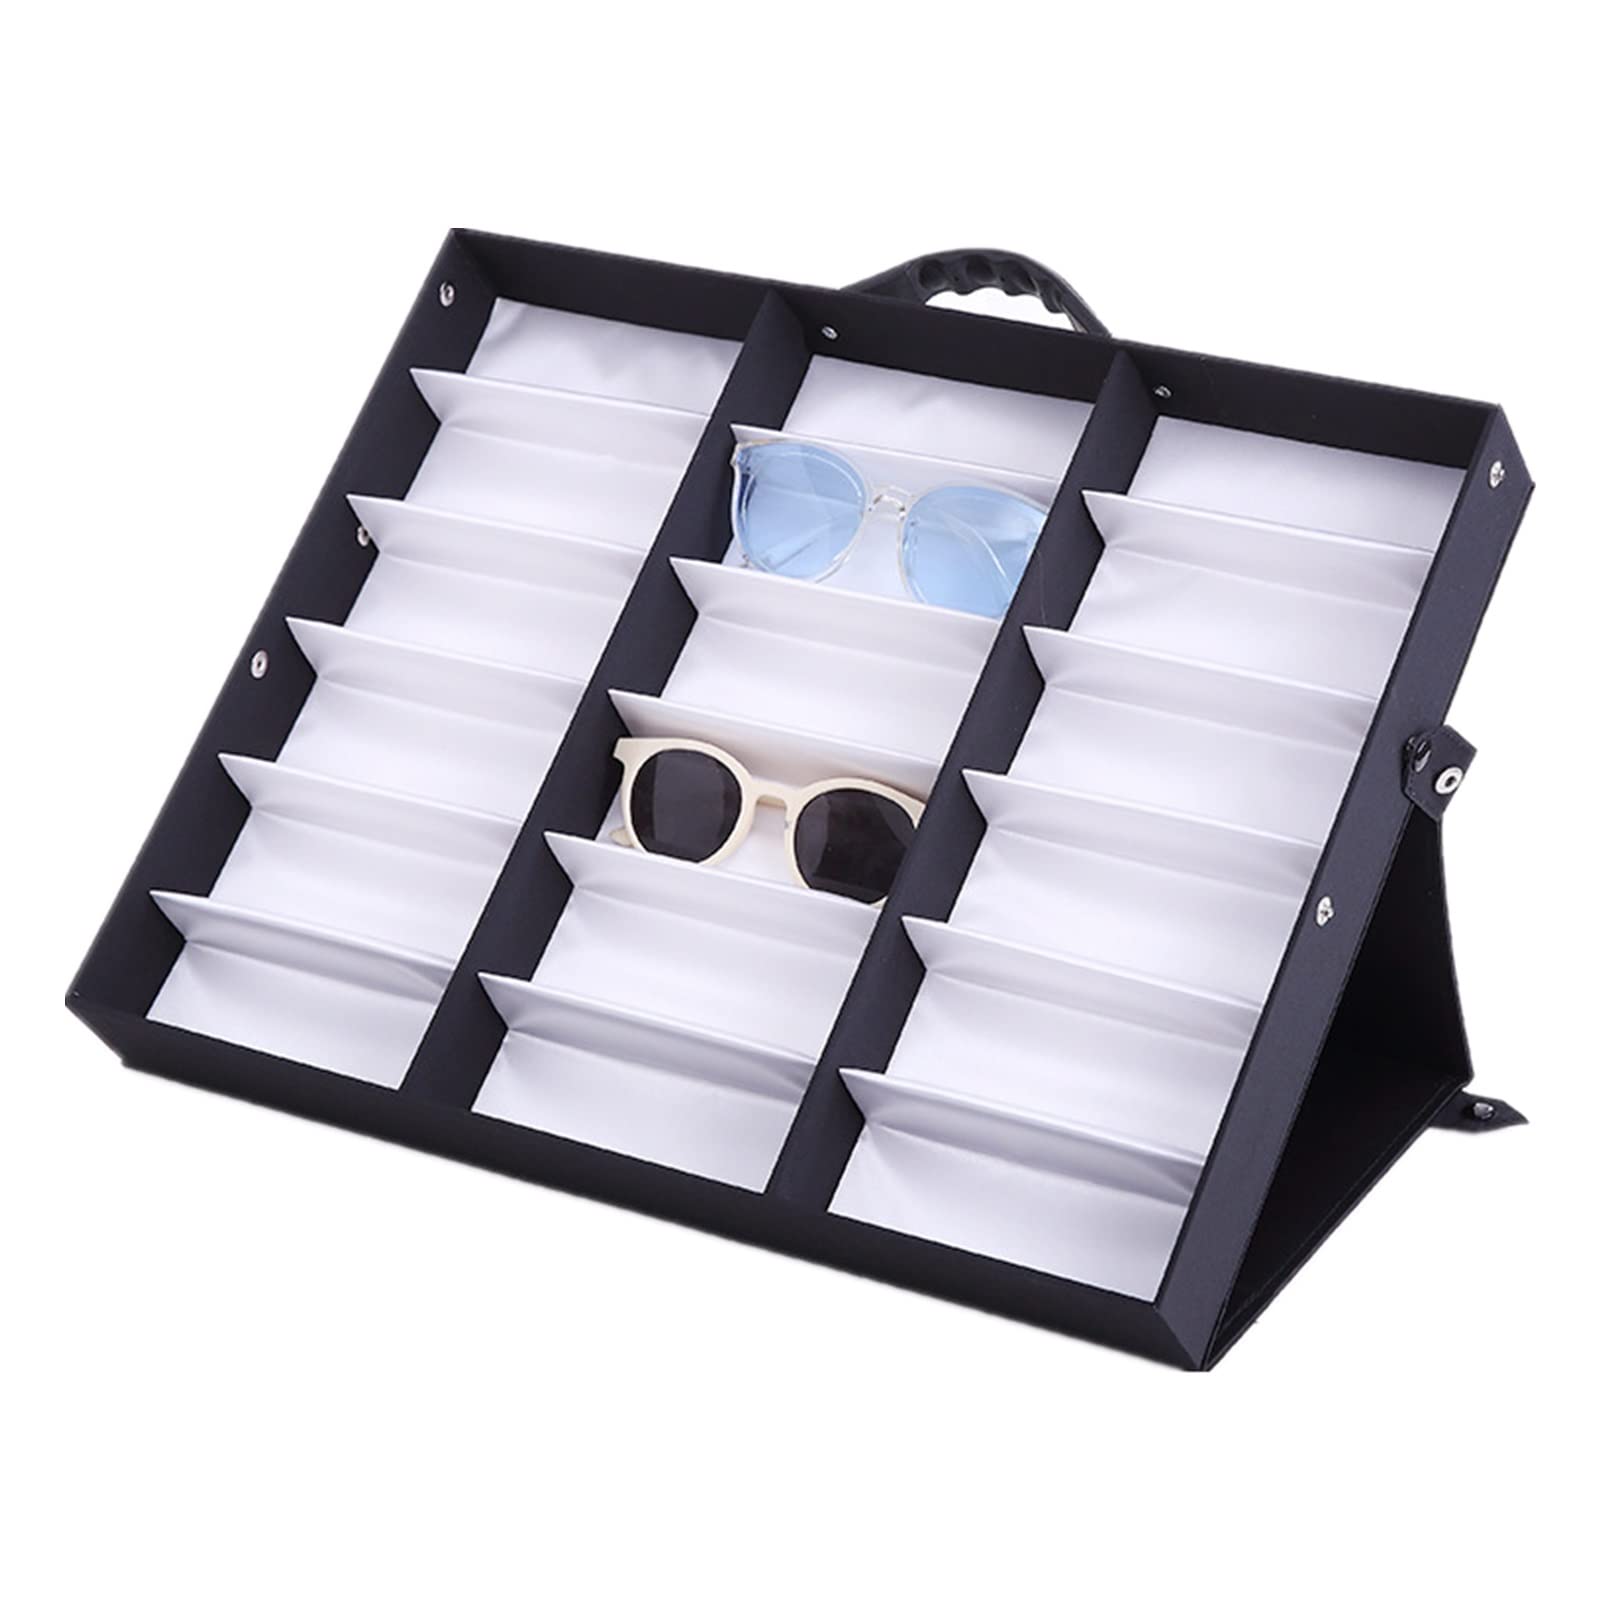 ChengBeautiful Brillenaufbewahrungsbox 18 Gitter Tragbare Gläser Display Box Sonnenbrille Sonnenbrille Aufbewahrungsbox Multi Grid Gläsern Display Requisiten (Farbe : Black, Size : 18 grids)